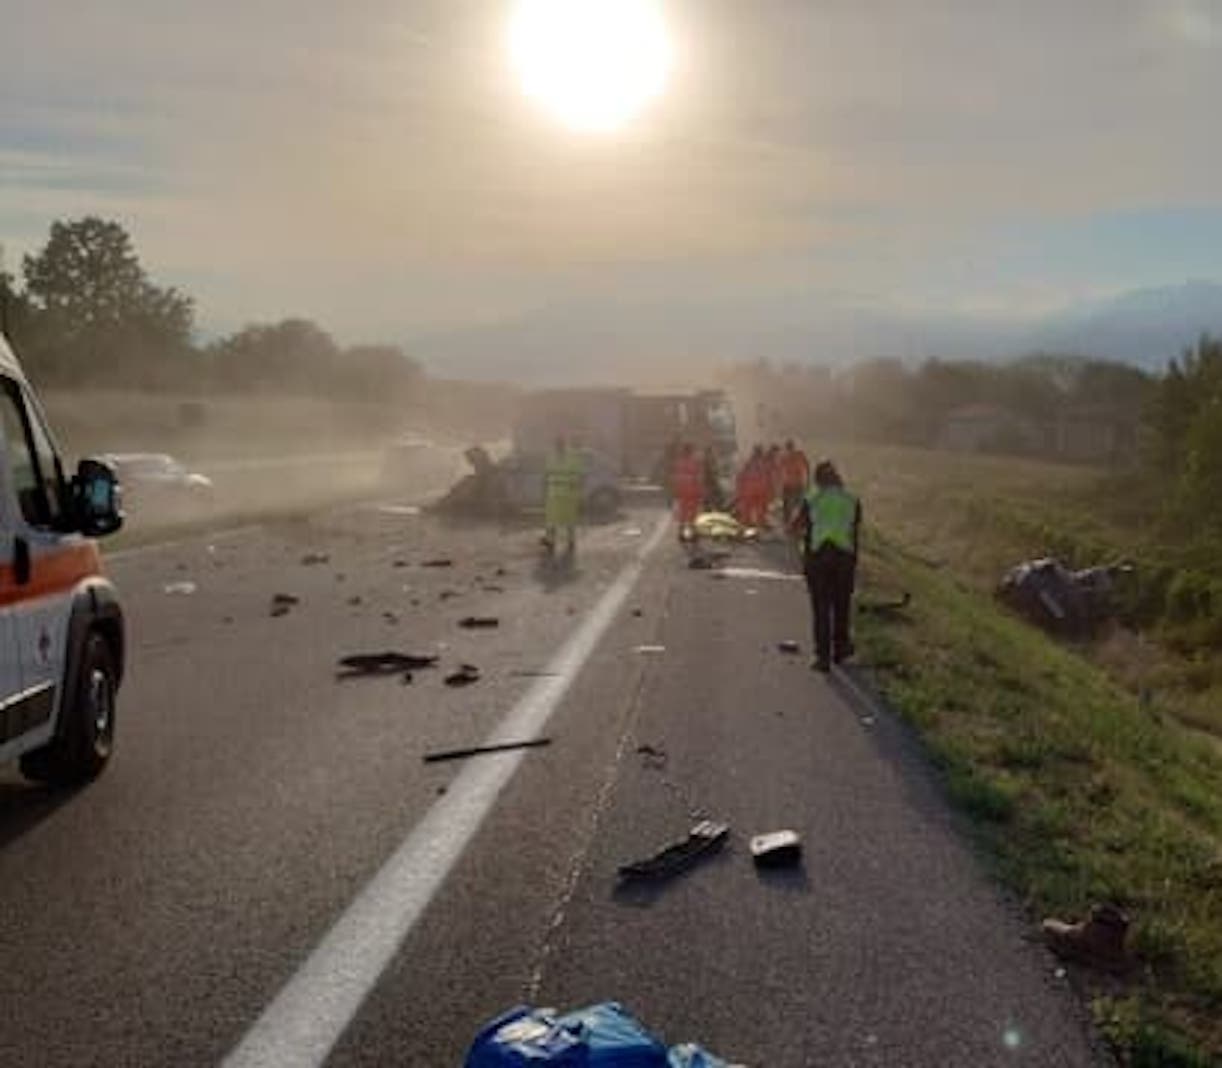 Famiglia siciliana distrutta in un incidente stradale: morti padre, madre e figlio 15enne